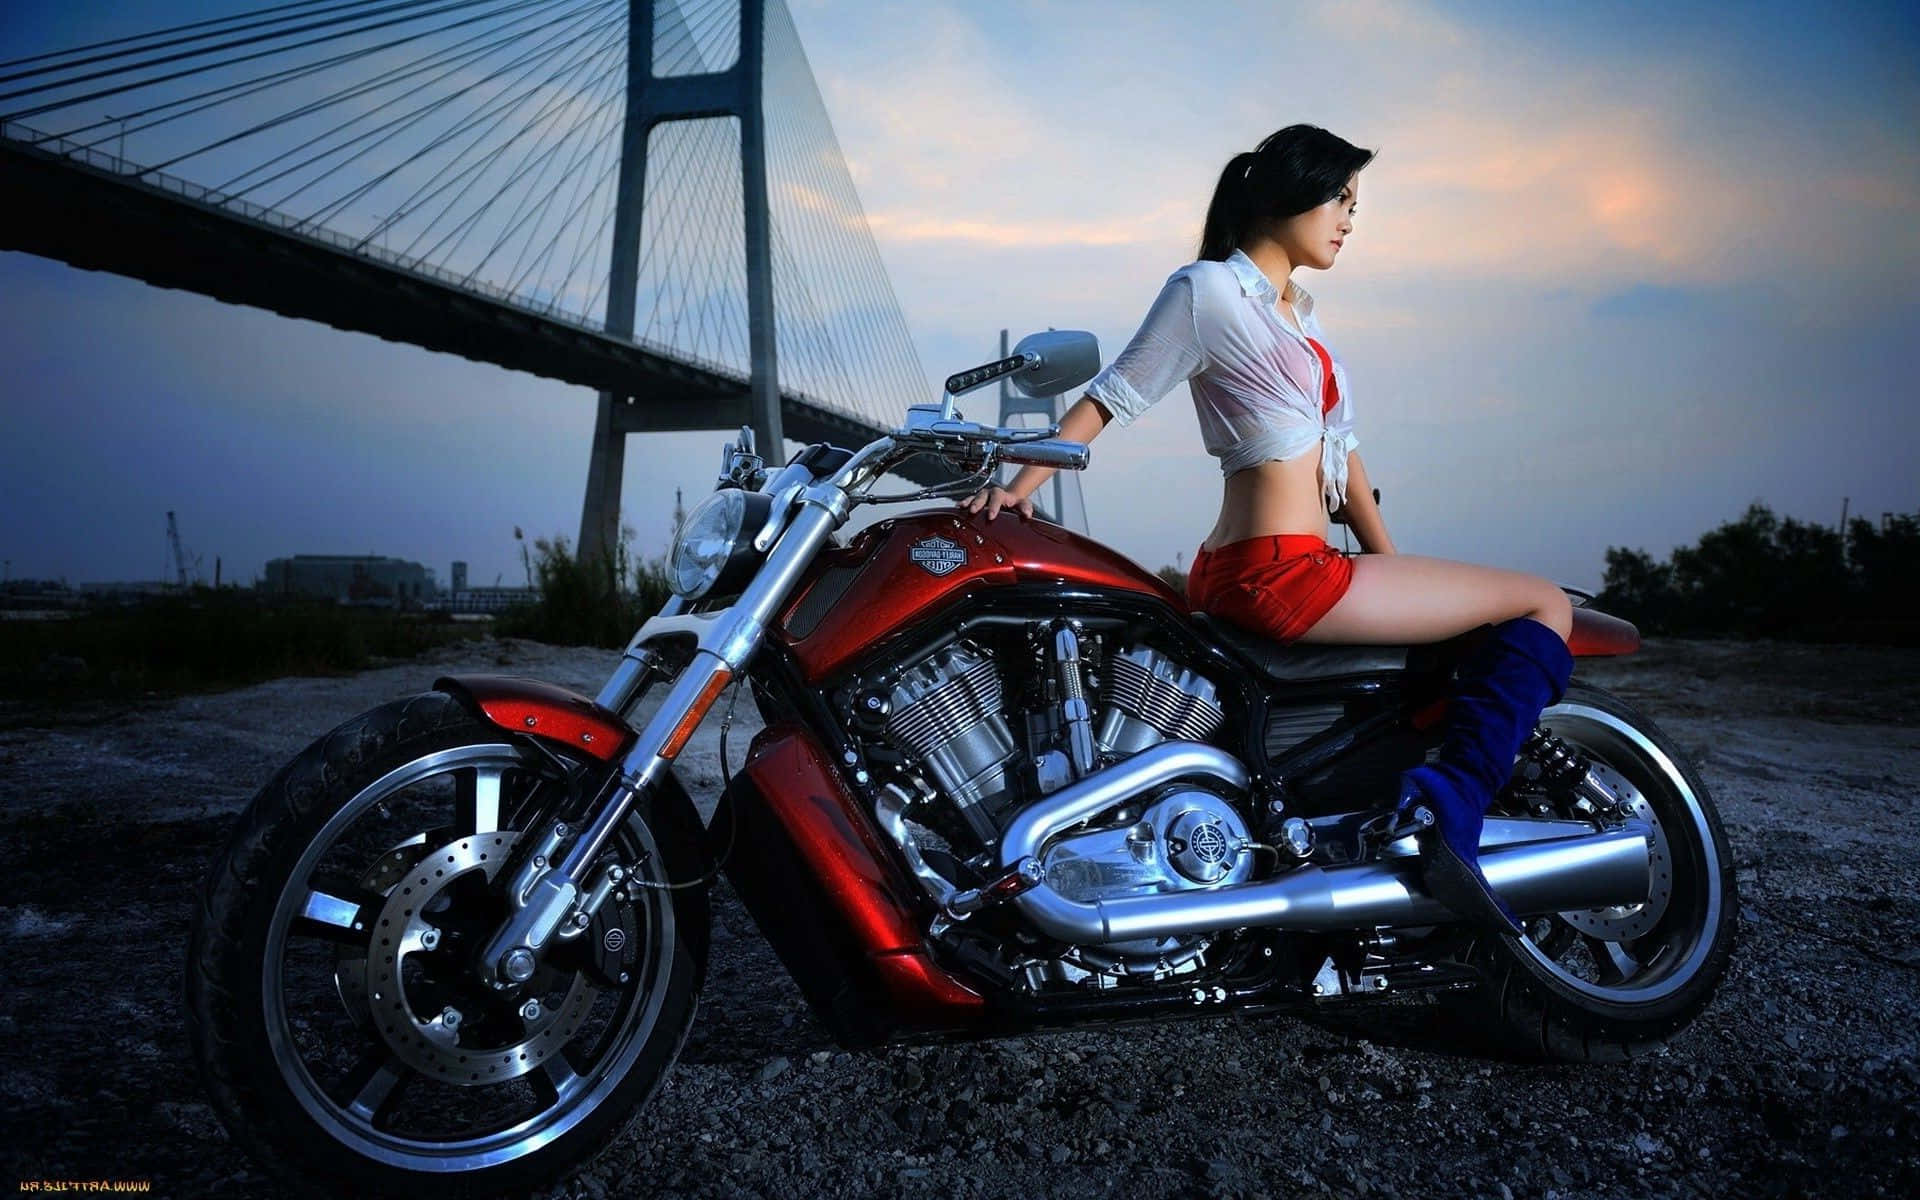 Imágenesde Motocicletas Harley Davidson Para Fondos De Pantalla En Computadoras O Móviles.